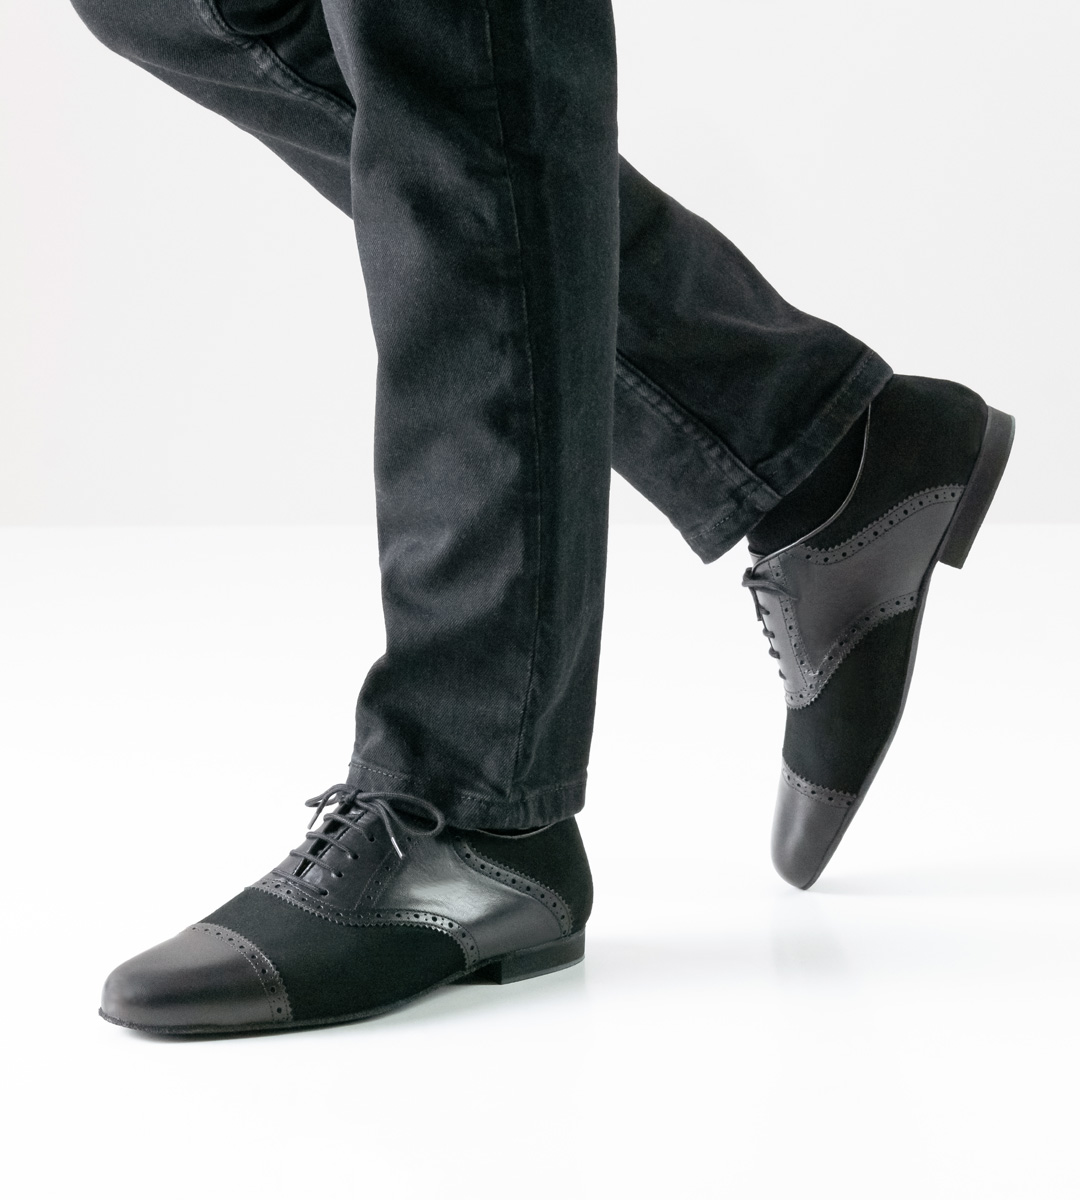 Jeans in schwarz in Kombination mit schwarzem Herrentanzschuh in Velours und Leder